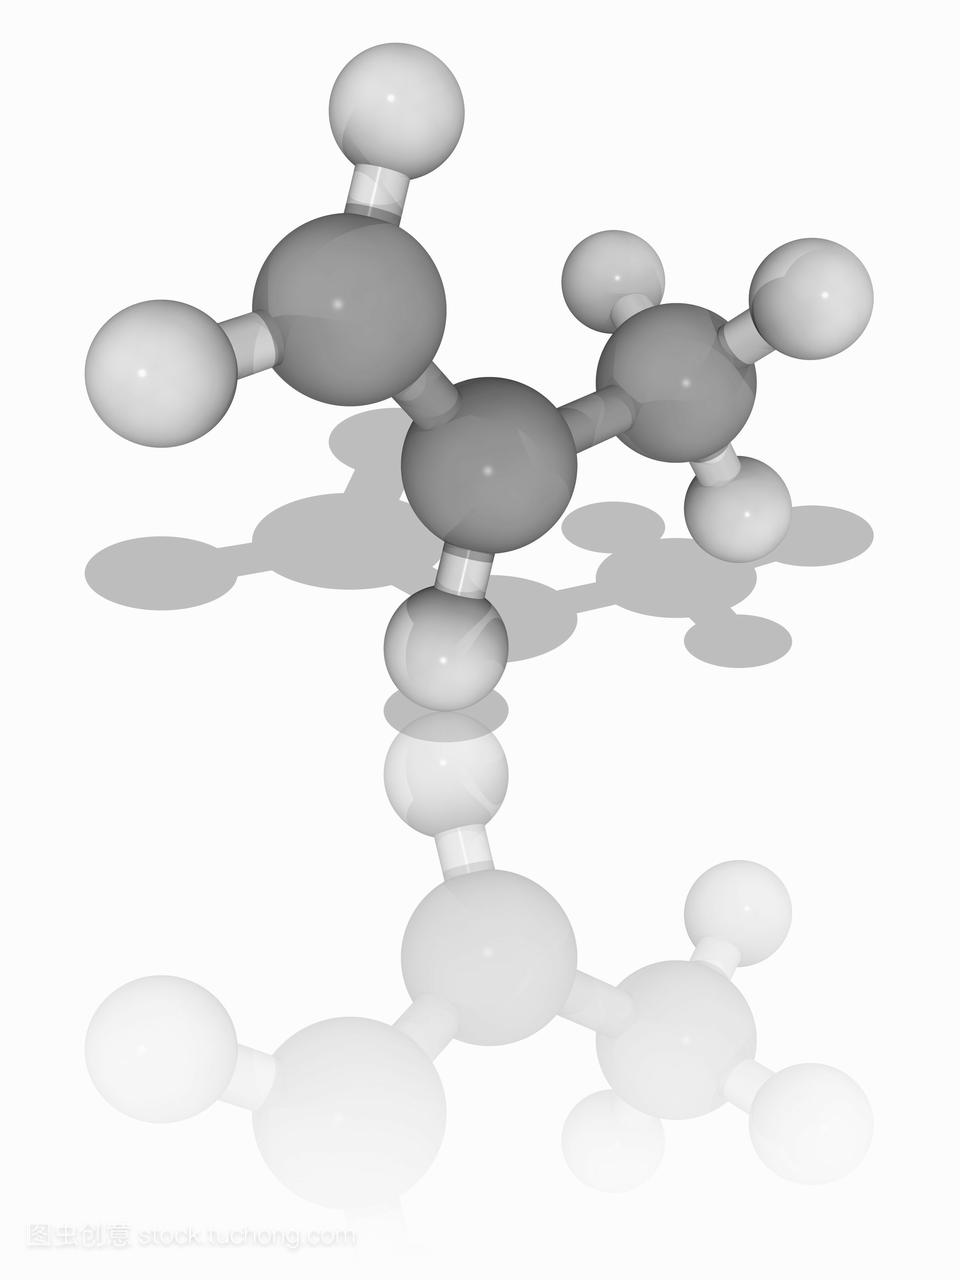 丙烯。烯烃丙烯c3h6的分子模型,也叫丙烯或甲